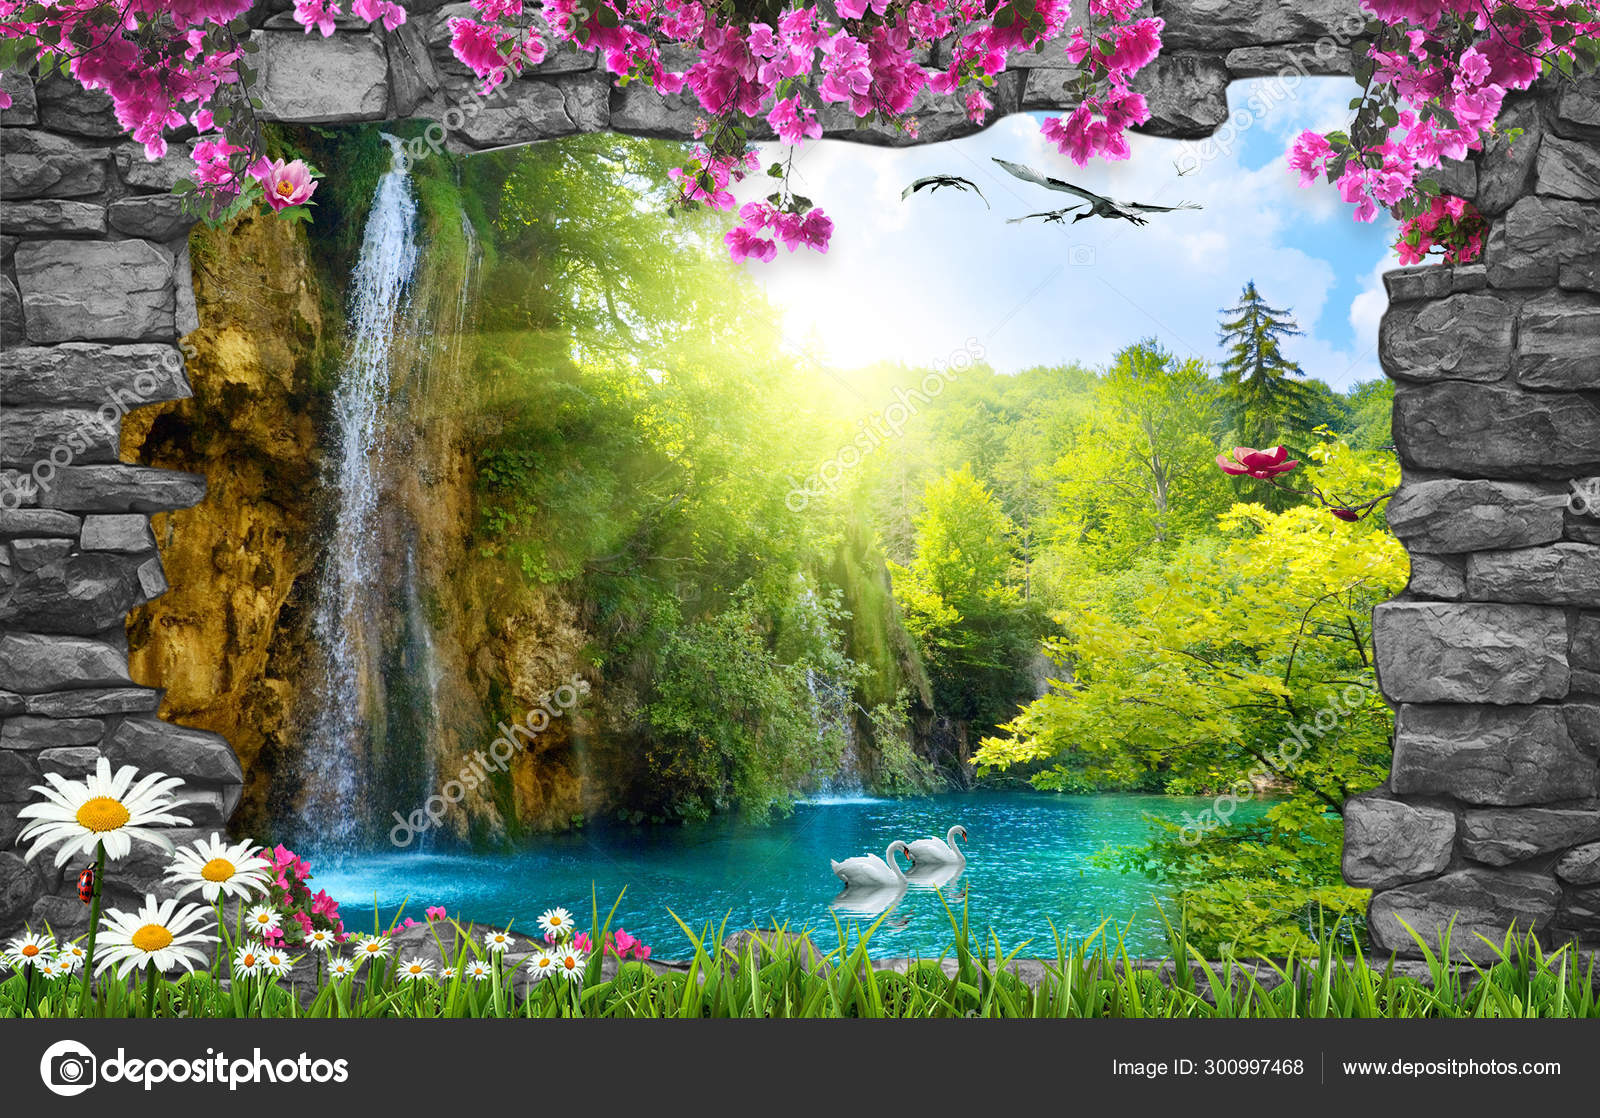 Amazing Nature Background Wallpaper Stock Photo by ©Zevahir 300997468